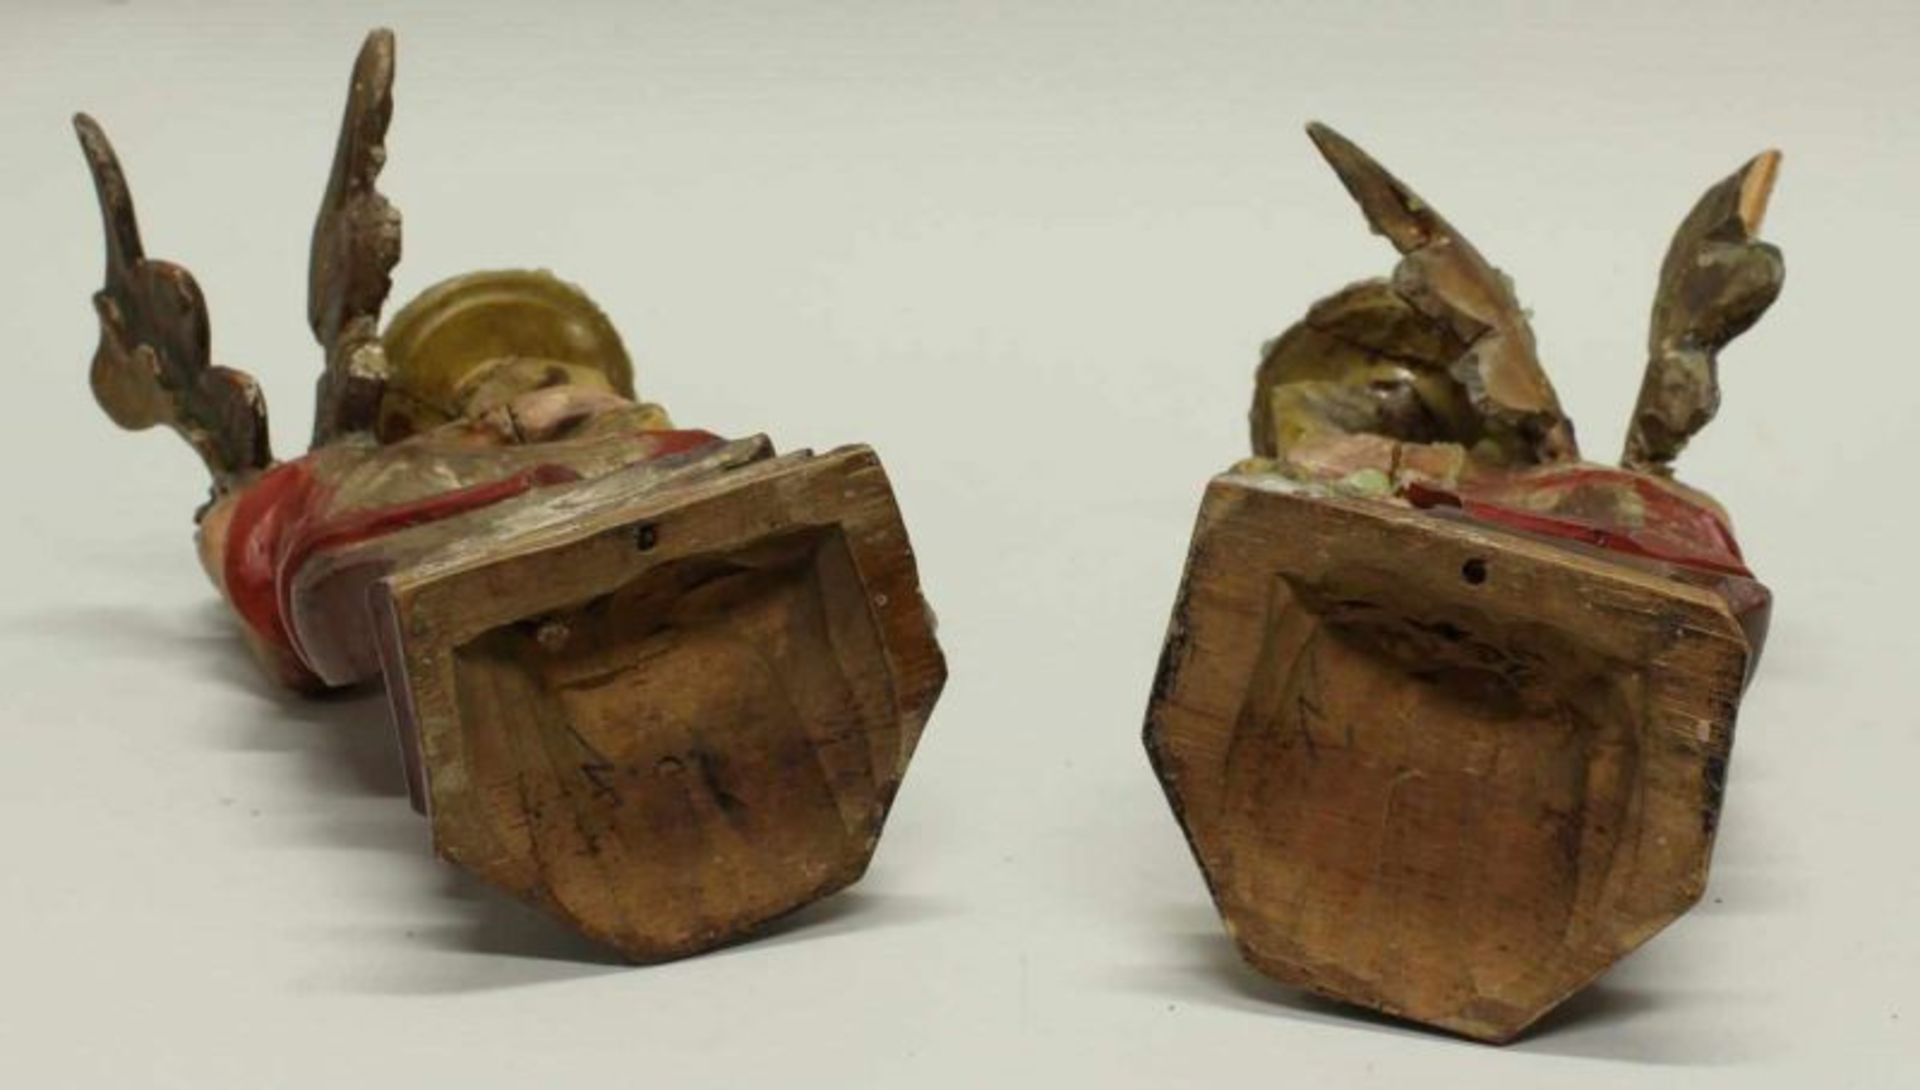 Paar Leuchterengel, Holz, gefasst, Anfang 20. Jh., 23 cm bzw. 24 cm hoch, geklebt, leicht beschädigt - Image 3 of 3